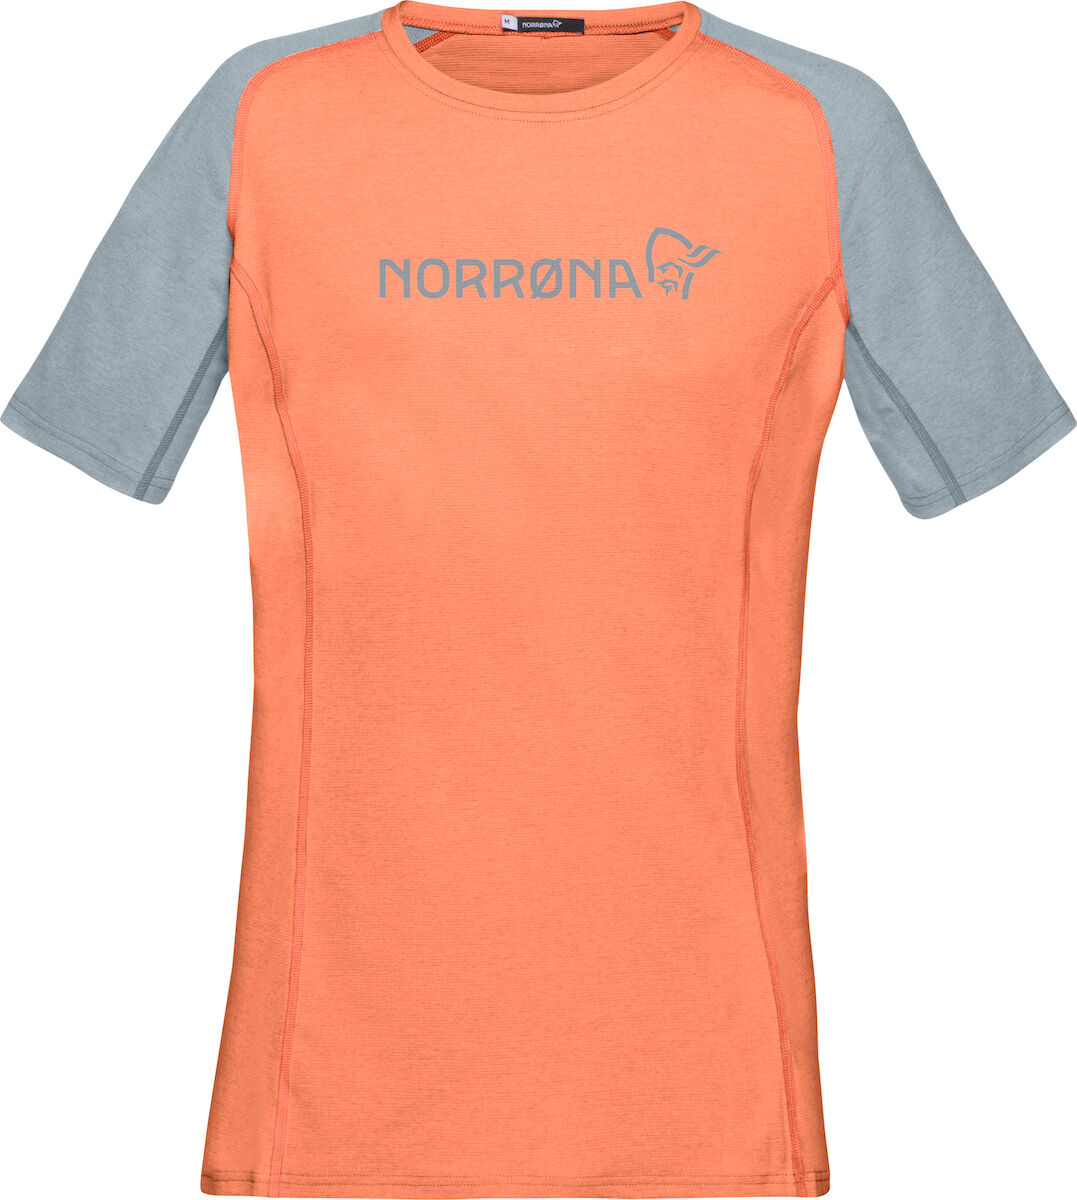 Norrona Fjørå Equaliser Lightweight - T-shirt - Women's